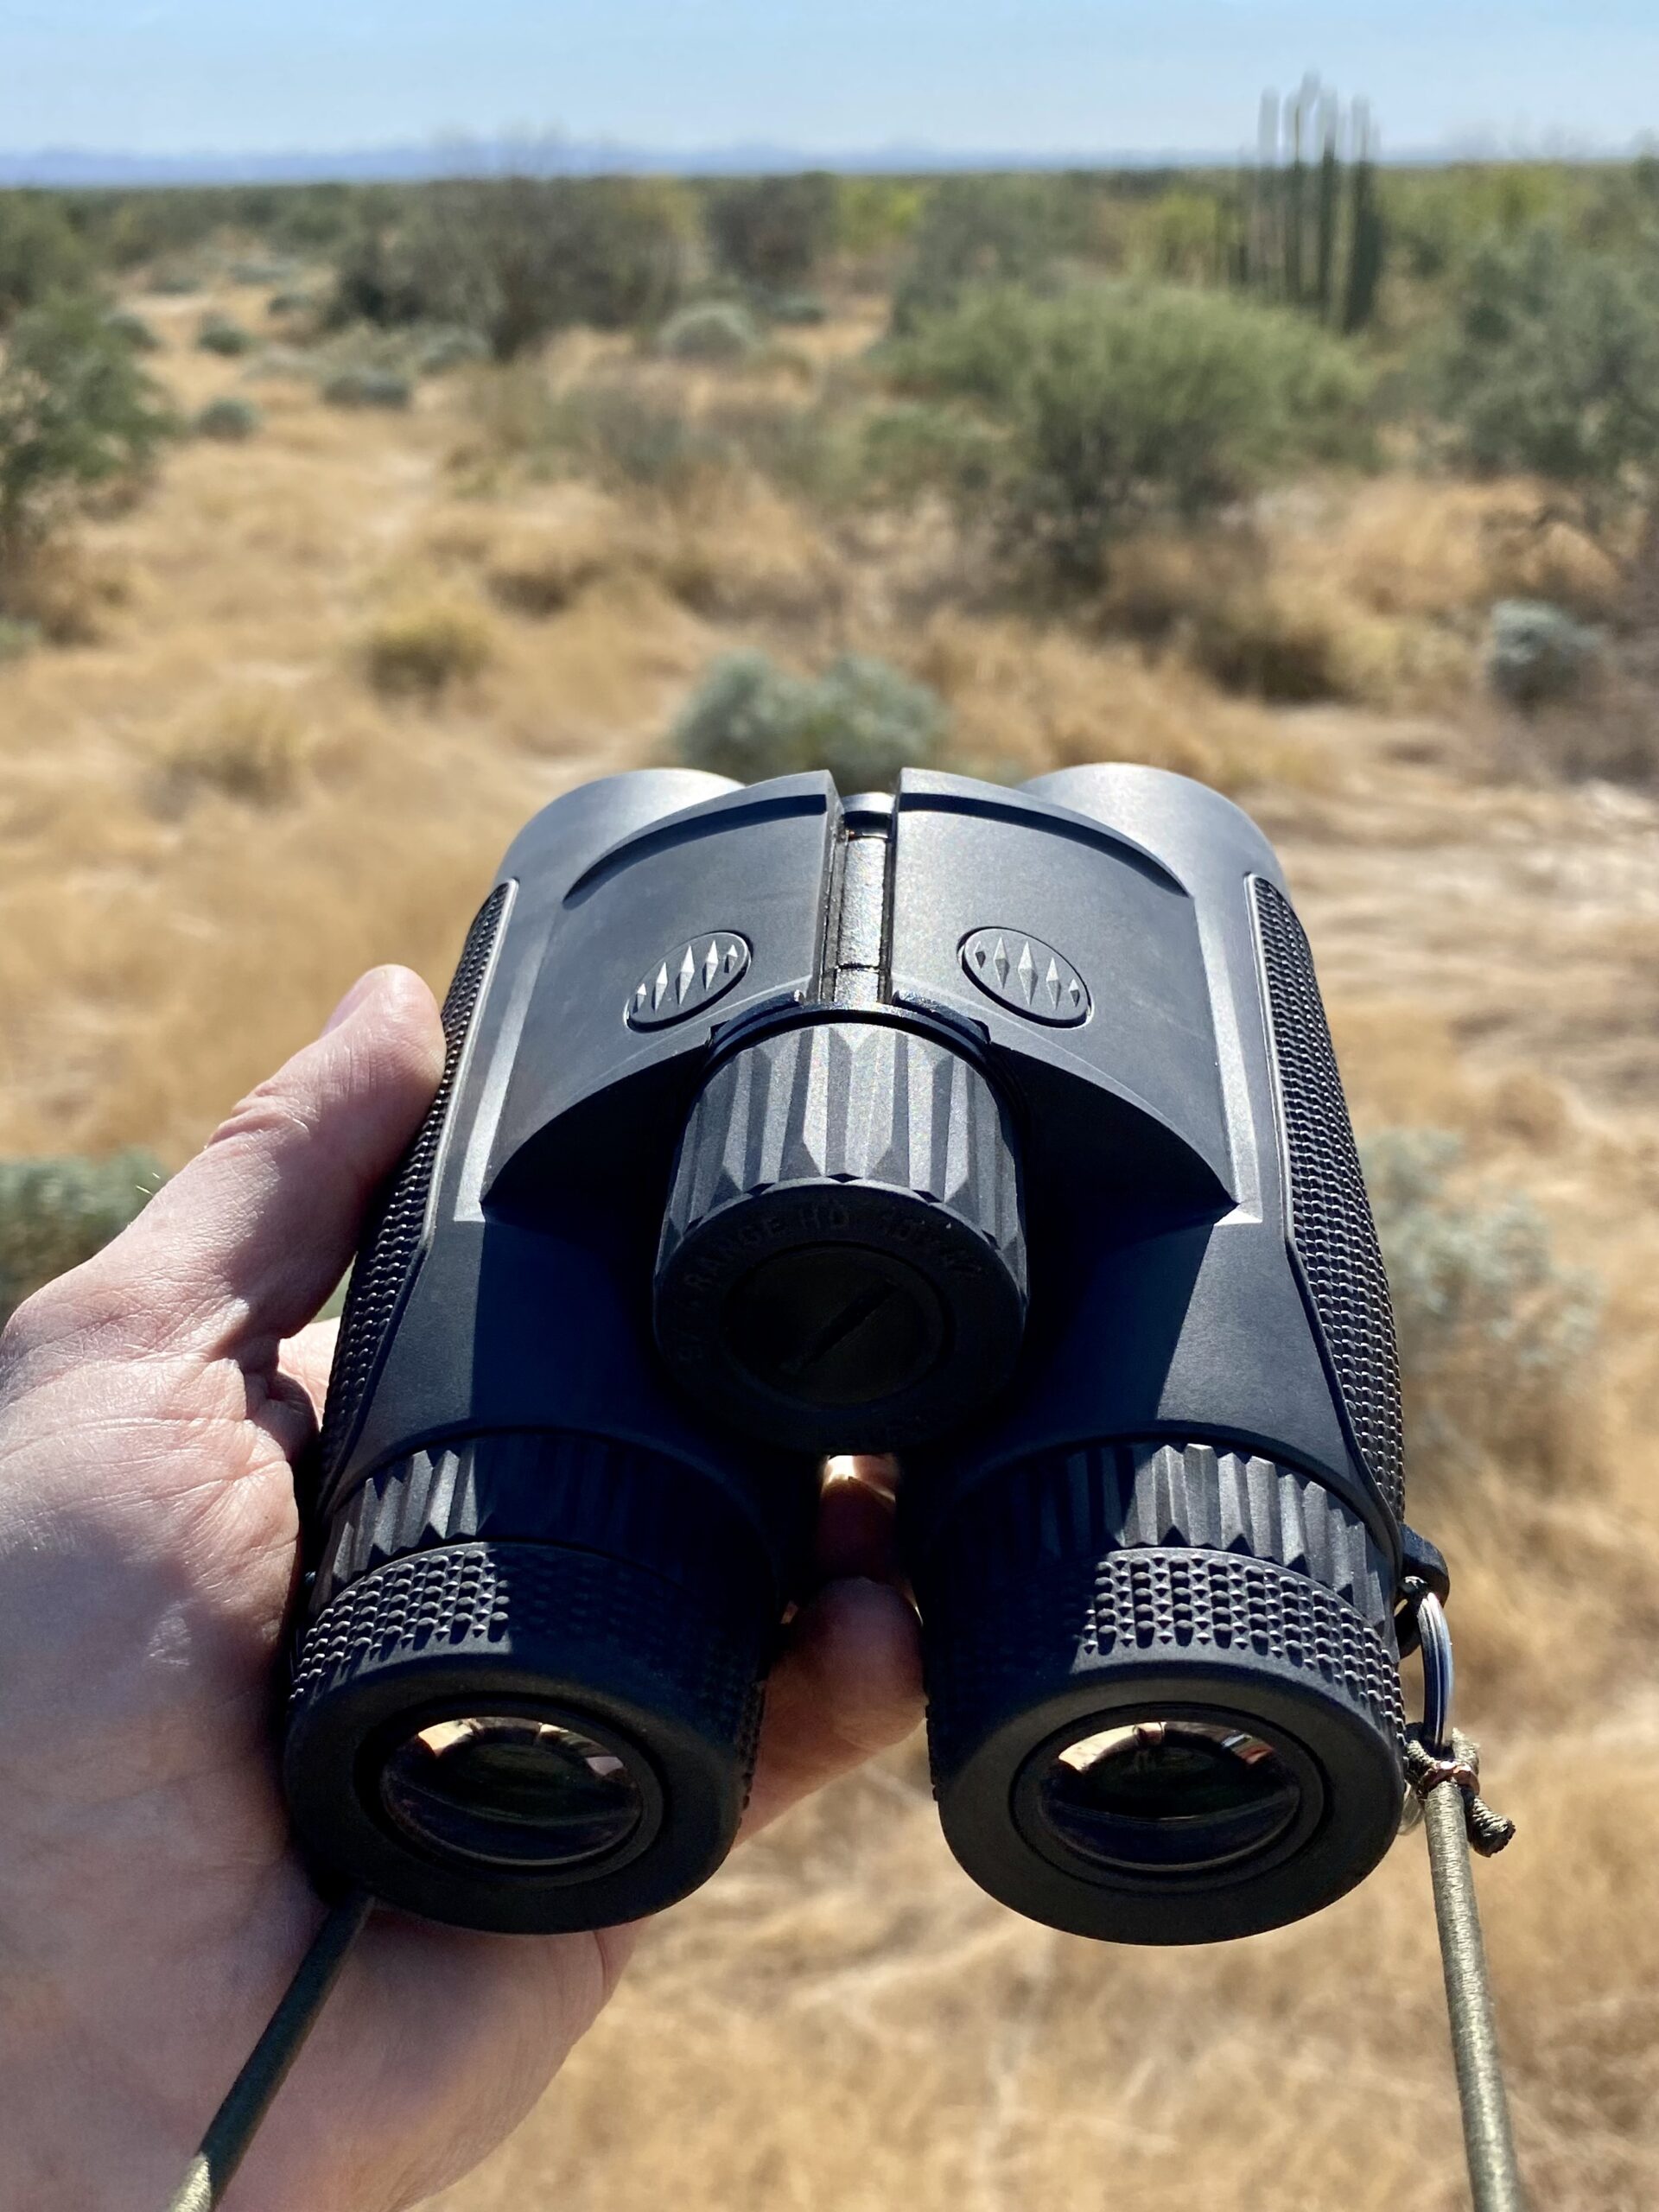 Binoculars photo